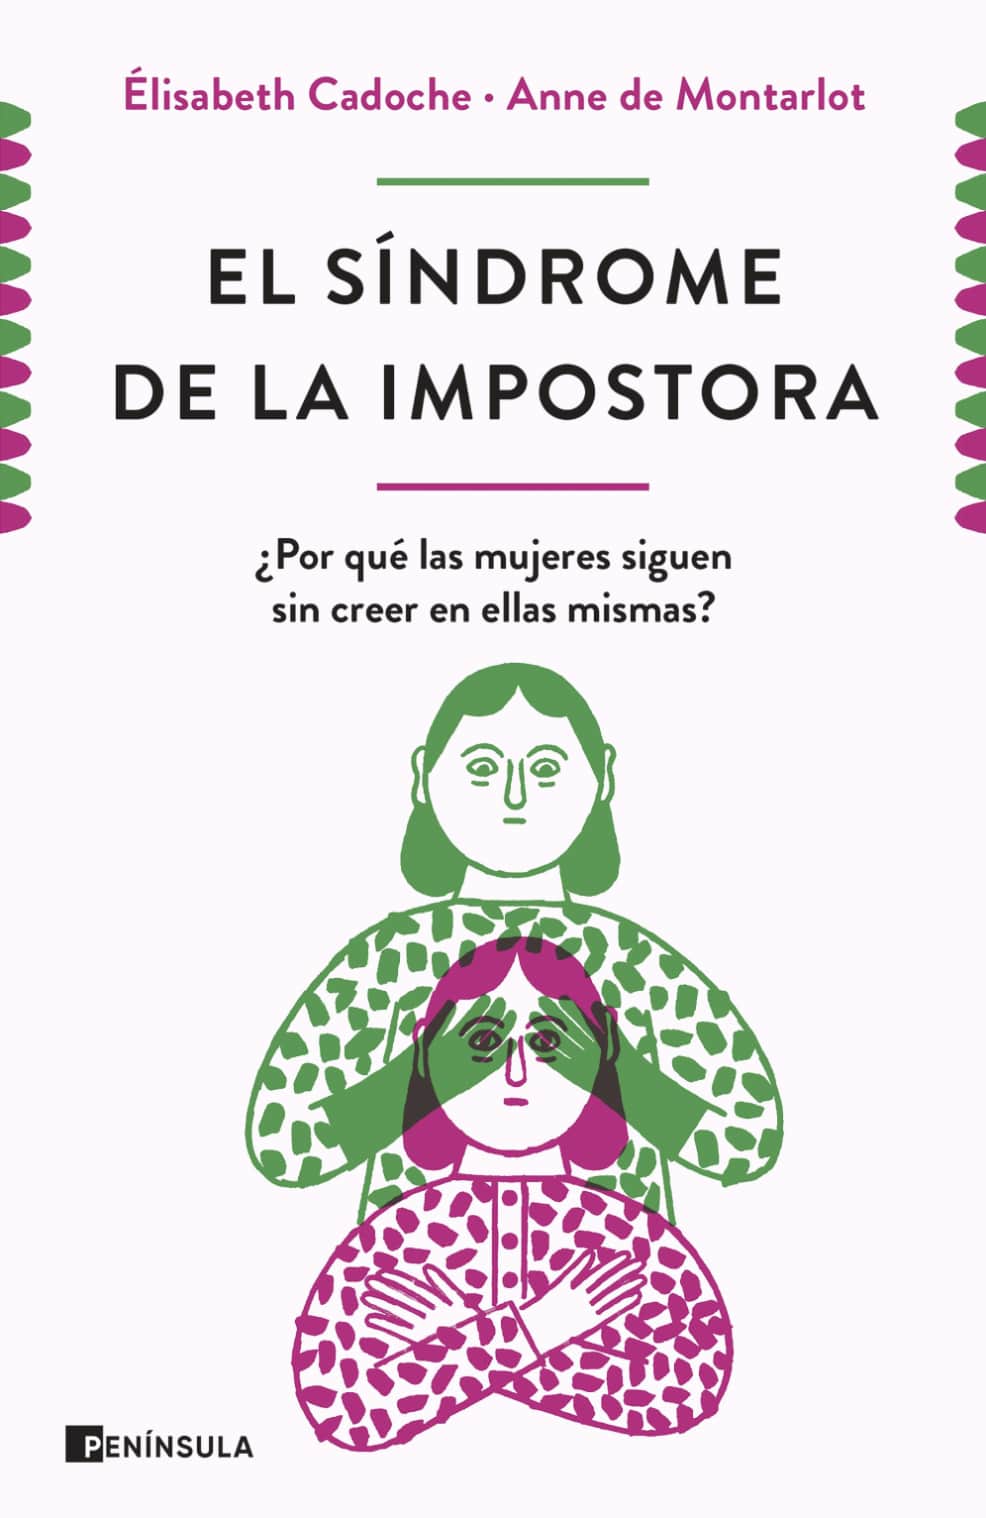 Ejemplo de libro de liderazgo: El síndrome de la impostora, de Elisabeth Cadoche y Anne de Montarlot